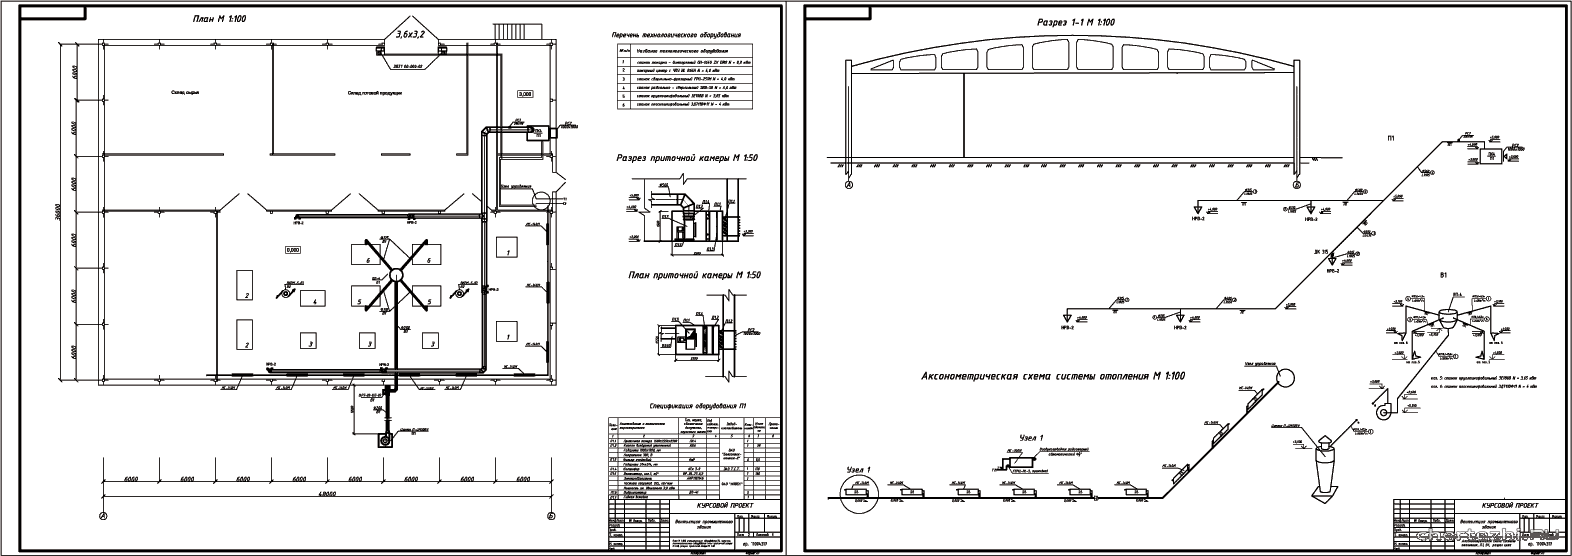 Курсовой проект - Приточно-вытяжная вентиляцию и система отопления участка механического цеха в г. Горки